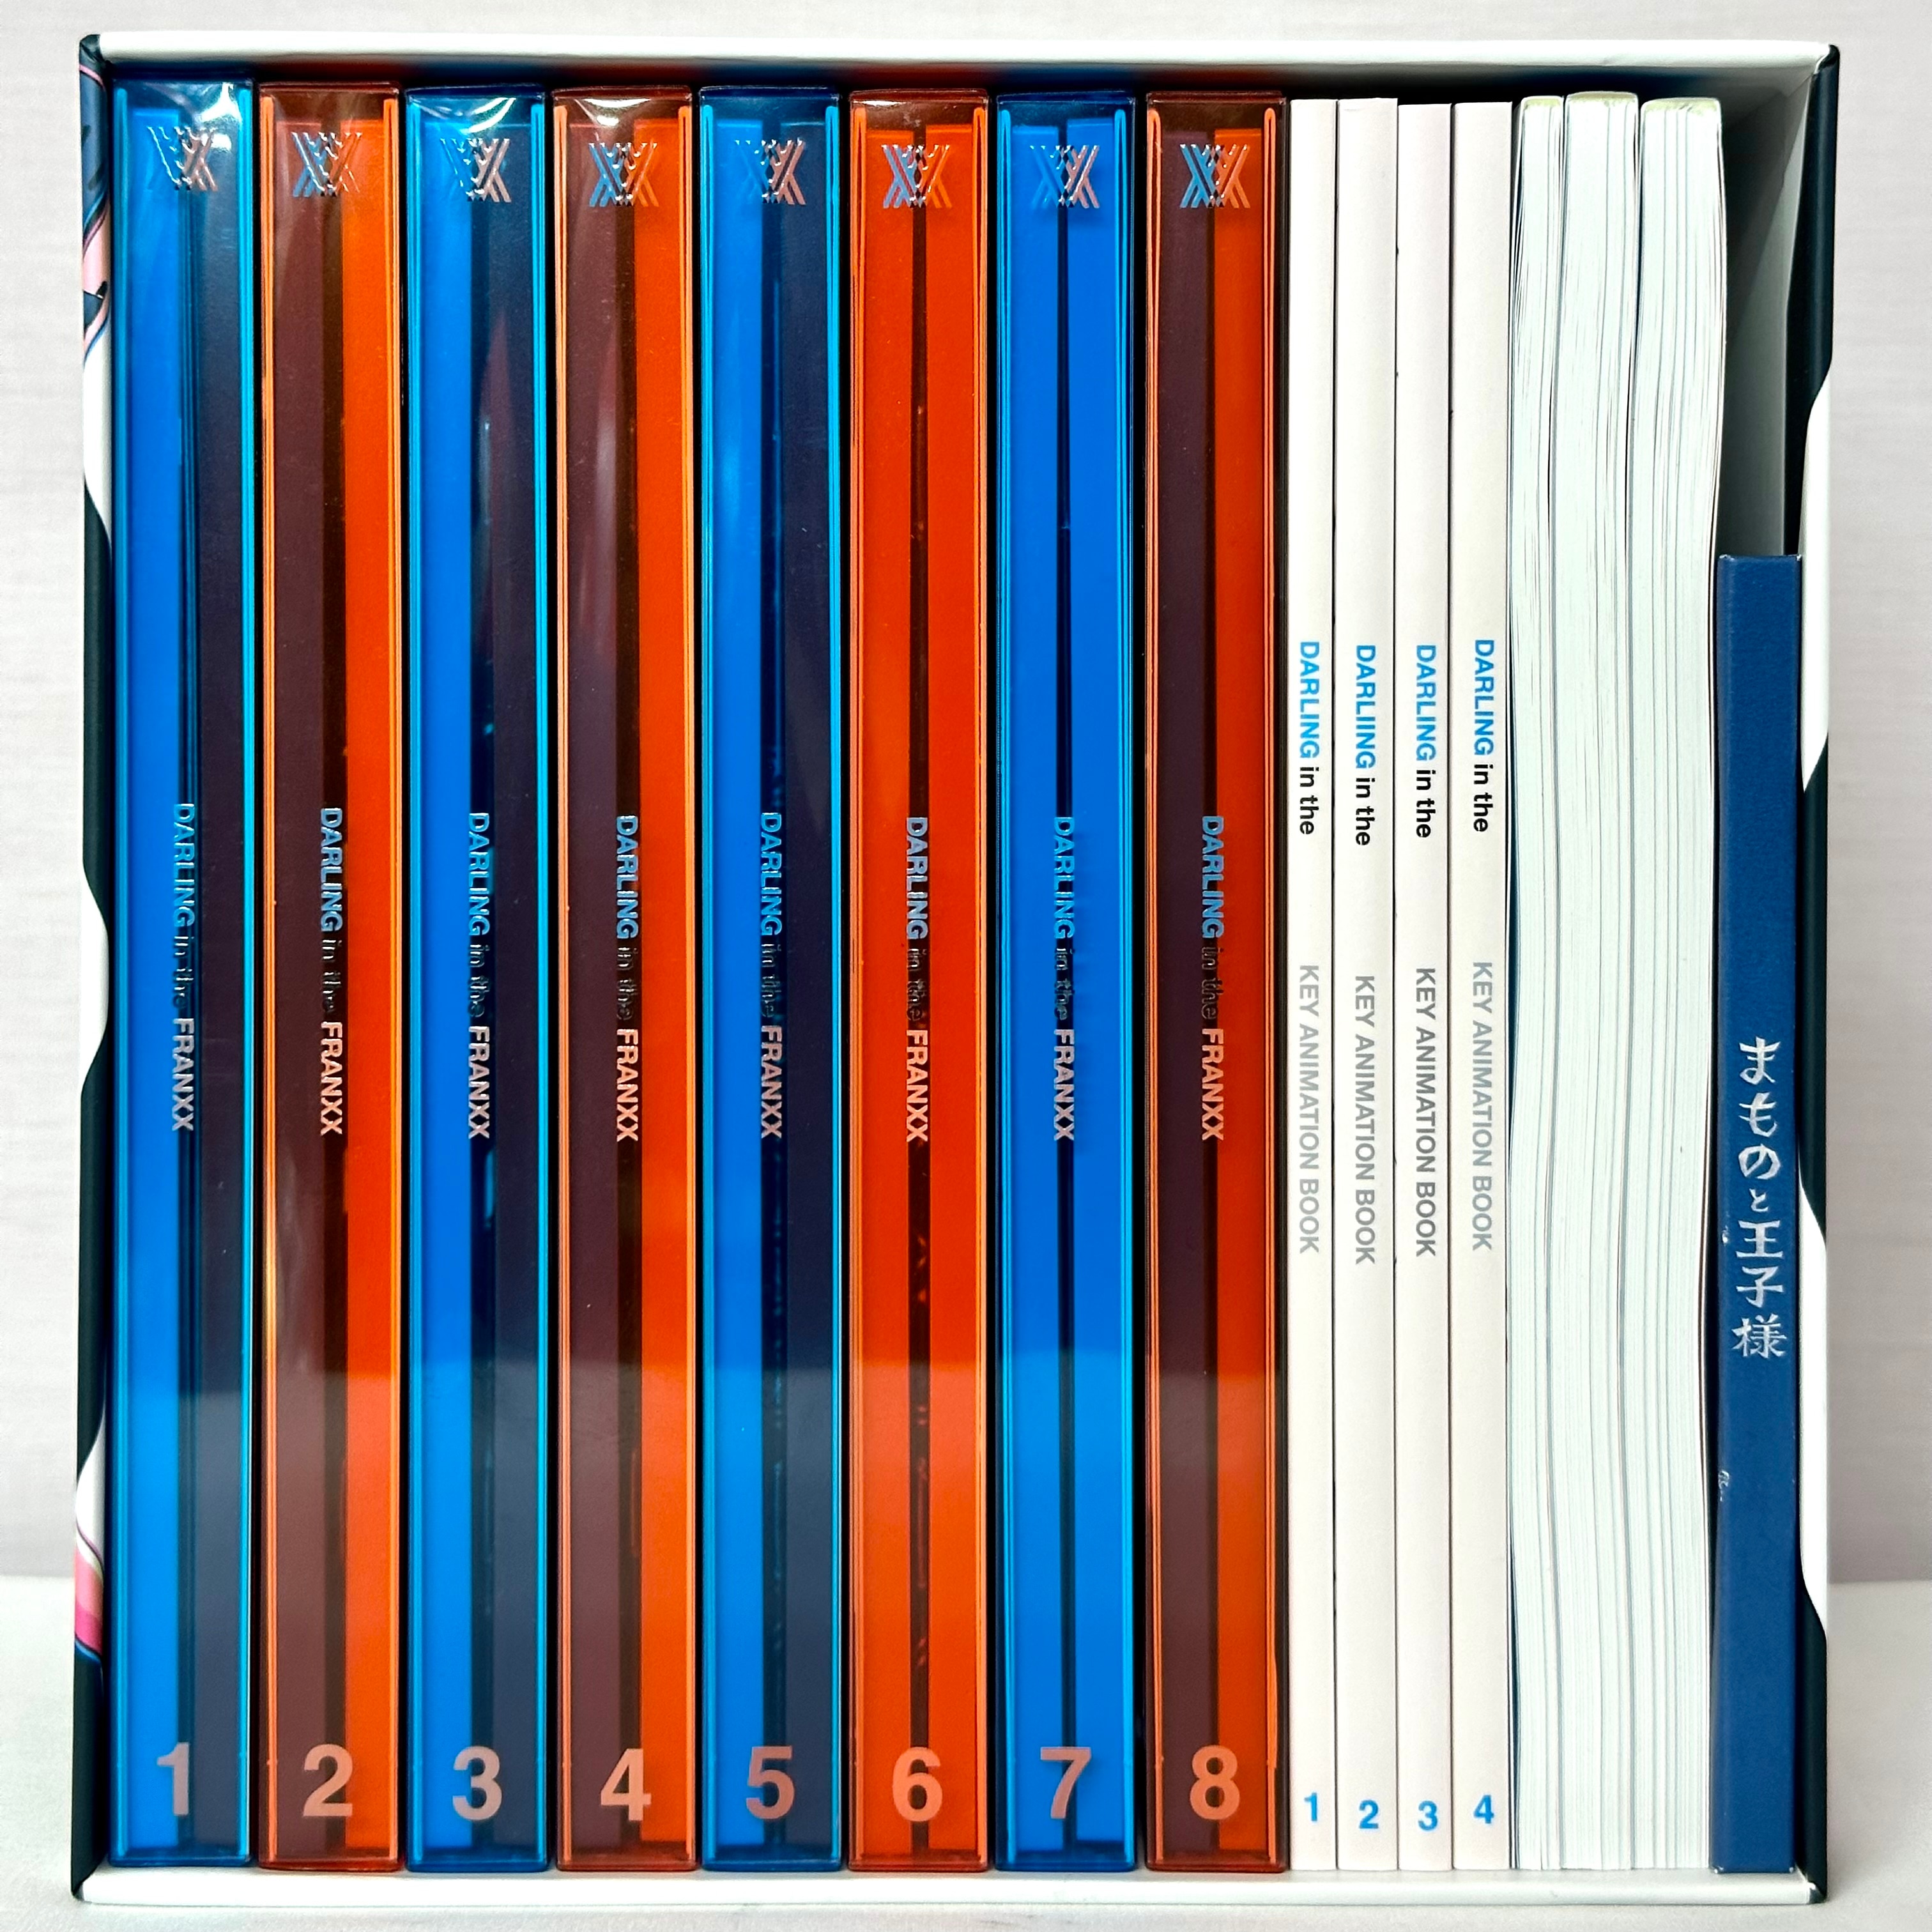 新品未使用) ダーリン イン ザ フランキス blue-ray 全8巻セット BOX